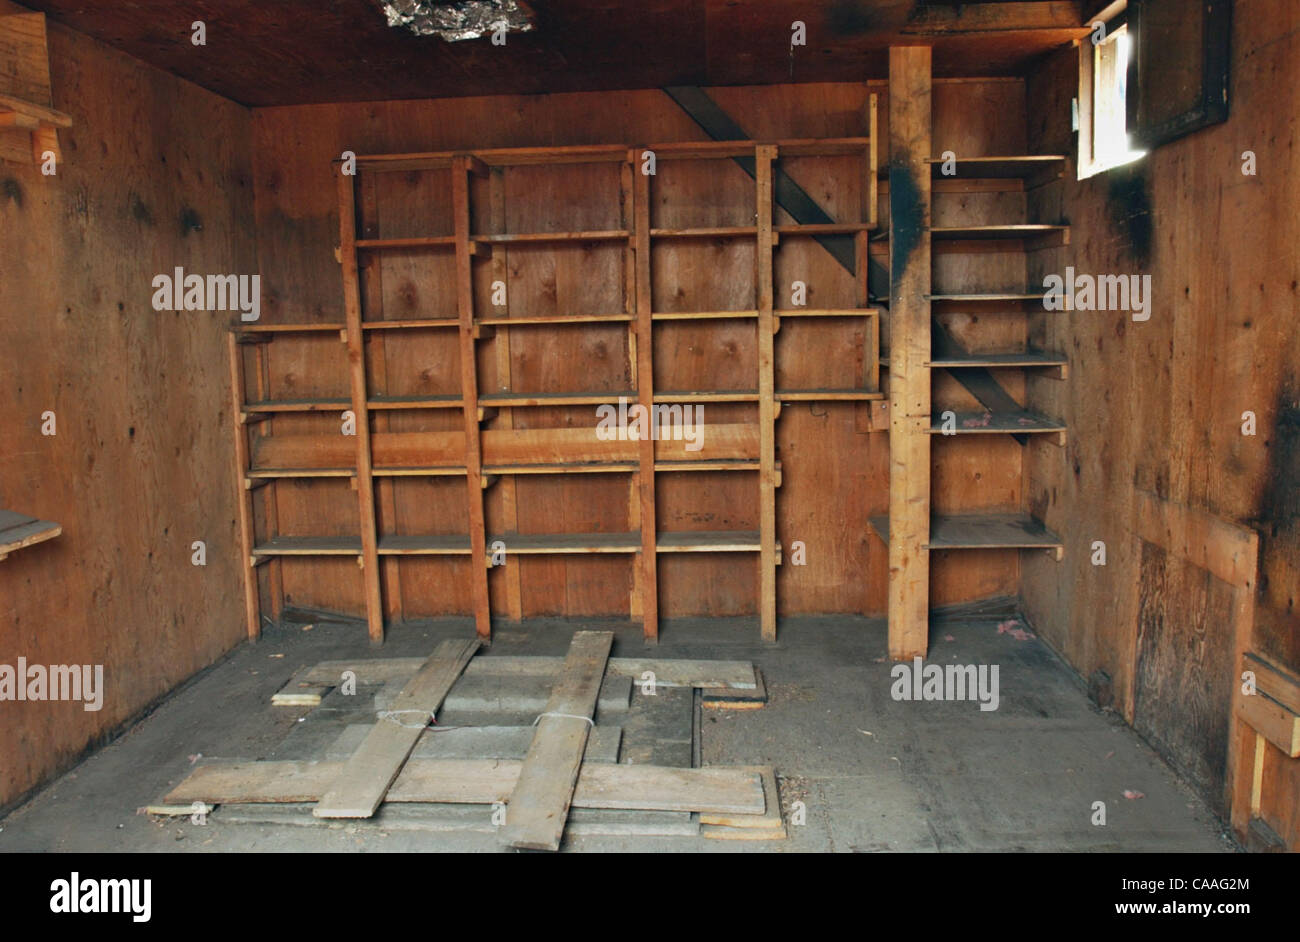 01 mai 2003, Sacramento, CA, USA ; l'intérieur de la cabine : La 10' x 13' chalet en bois que Ted Kaczynski, l'Unabomber condamnés, vivaient dans la région de Montana a été transféré à la propriété privée aujourd'hui, jeudi, 1 mai 2003. La structure devait être démantelé et enlevé d'un storage installations Banque D'Images